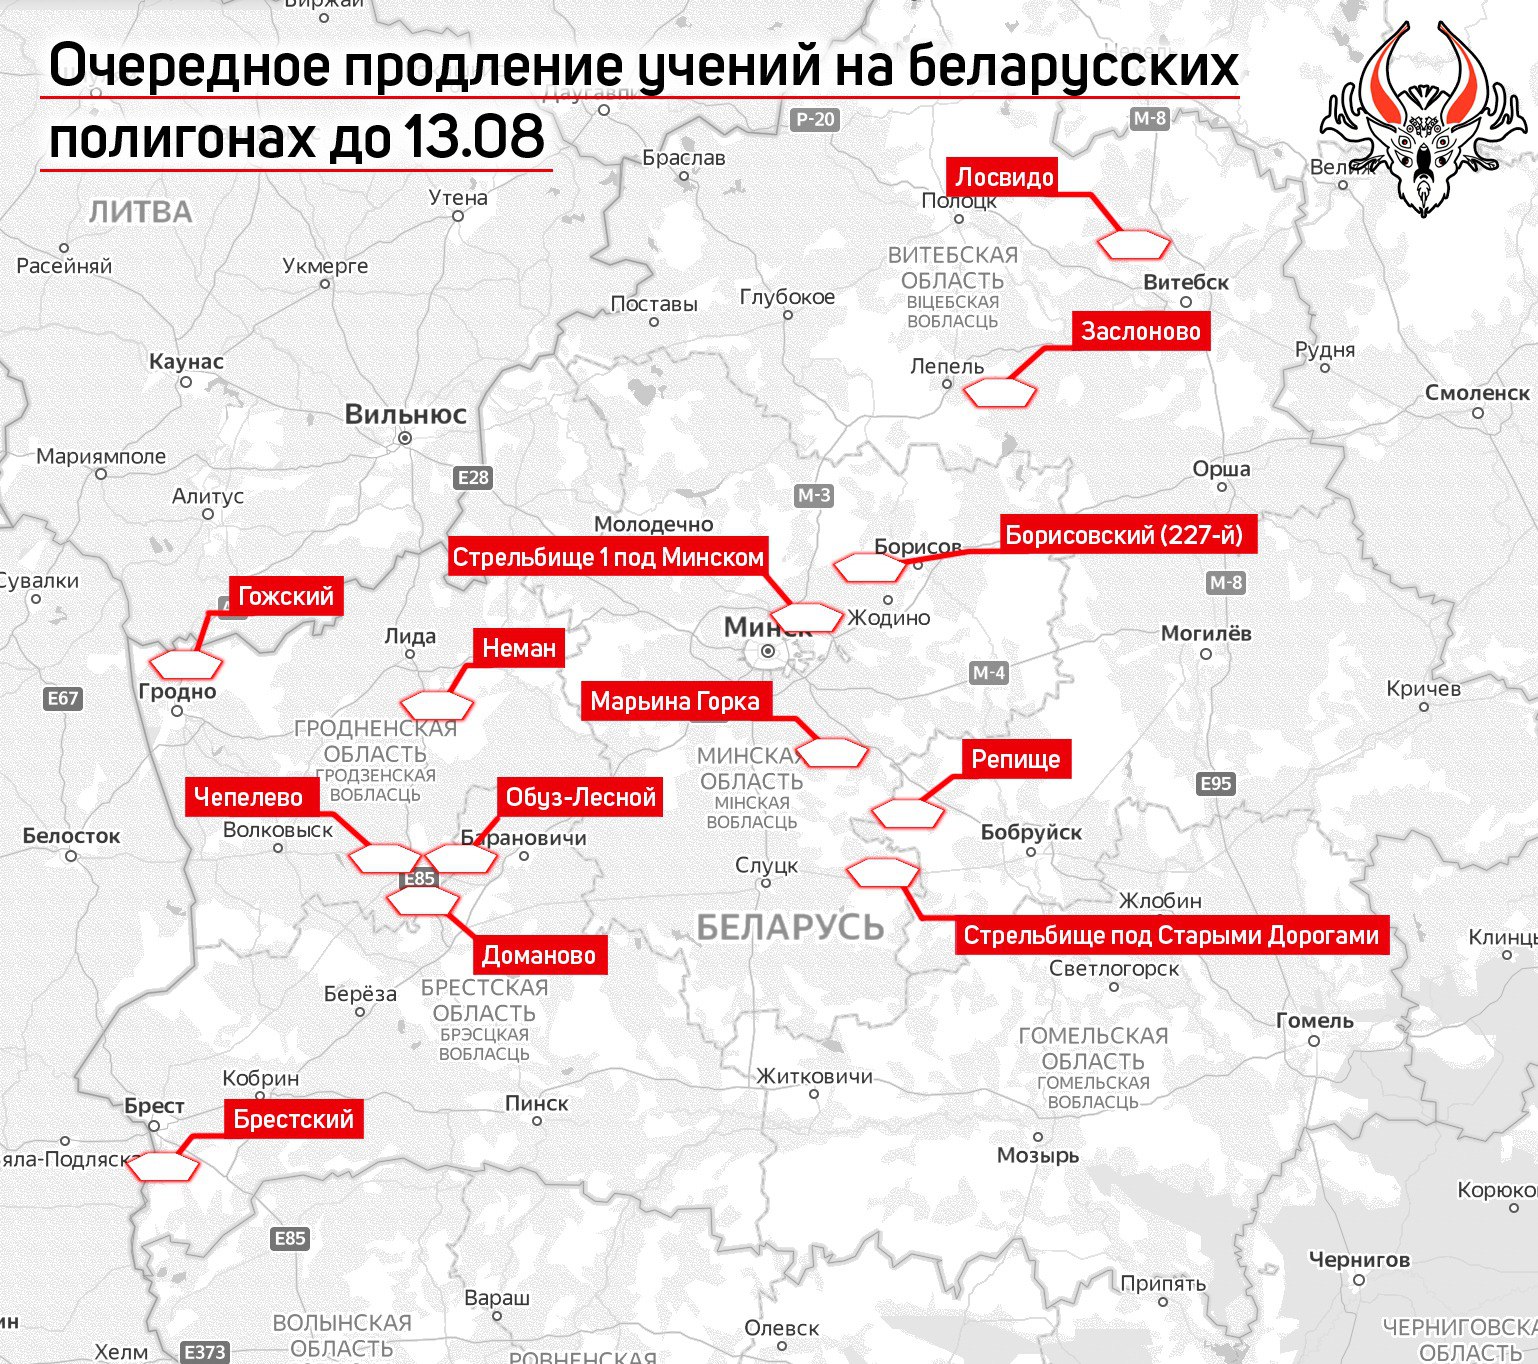 Мапа проведення військових навчань в Білорусі. Джерело: Беларускі Гаюн